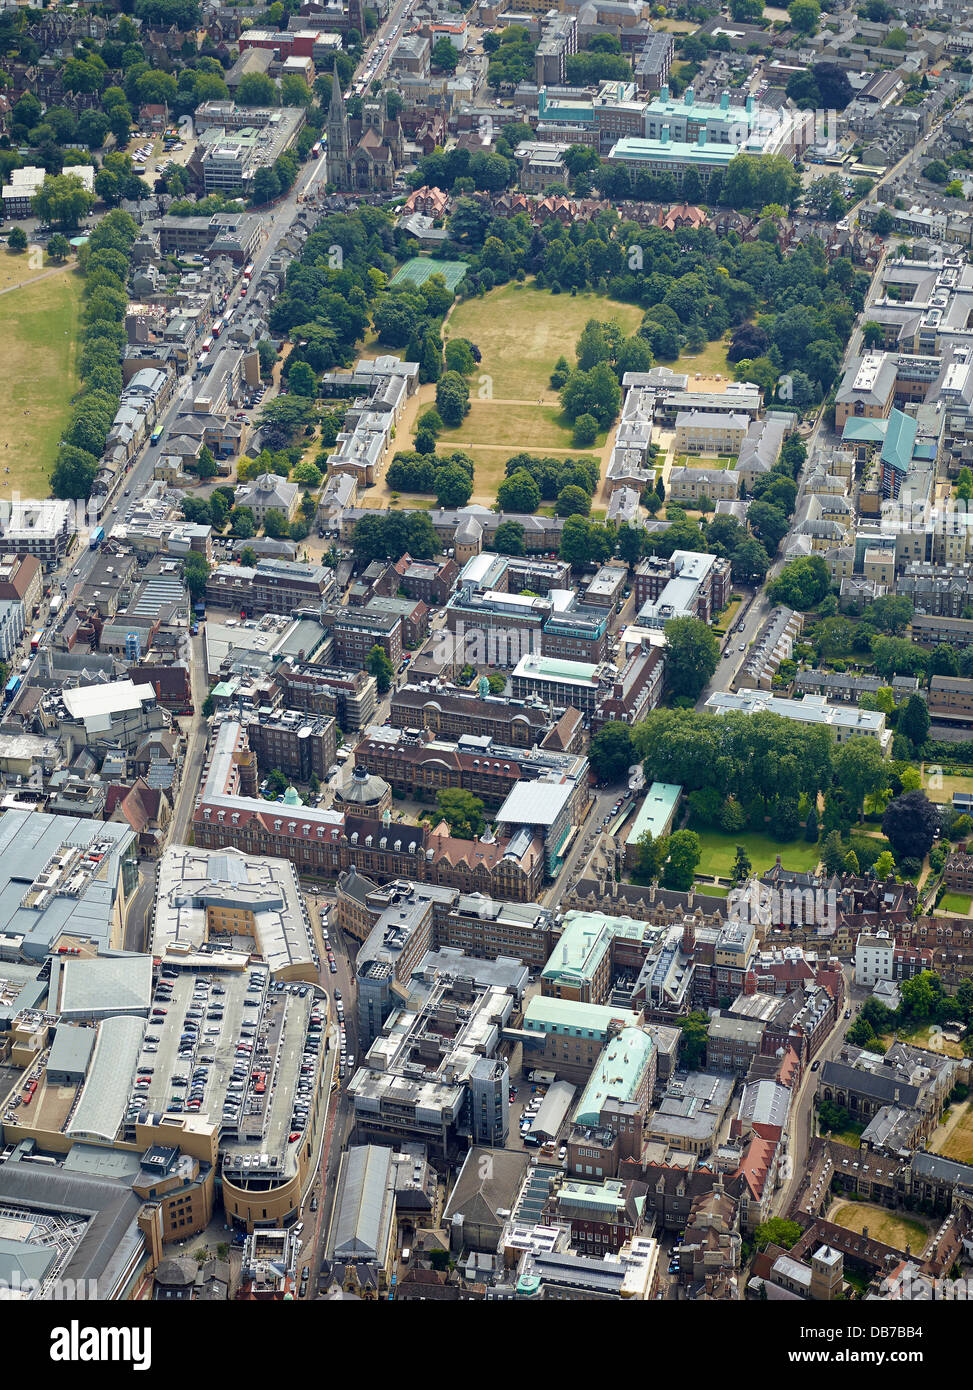 L'université de Cambridge, la grande ville d'Angleterre, de l'air, Angleterre du Sud-Est, Royaume-Uni Banque D'Images